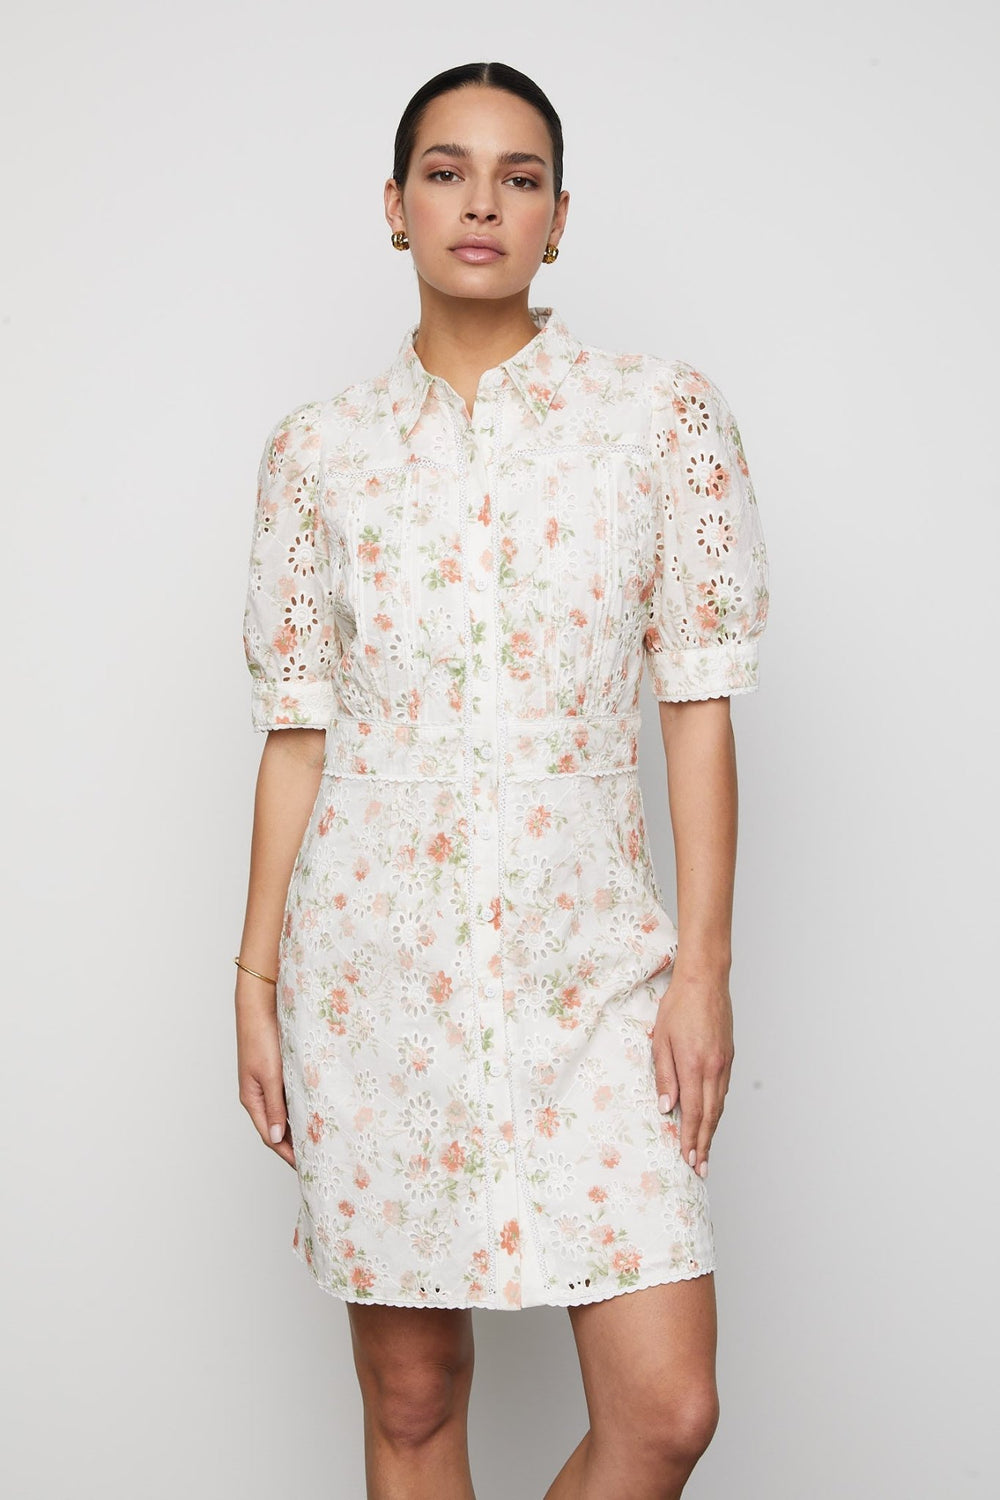 Juno Dress White Rose Print | Kjoler | Smuk - Dameklær på nett